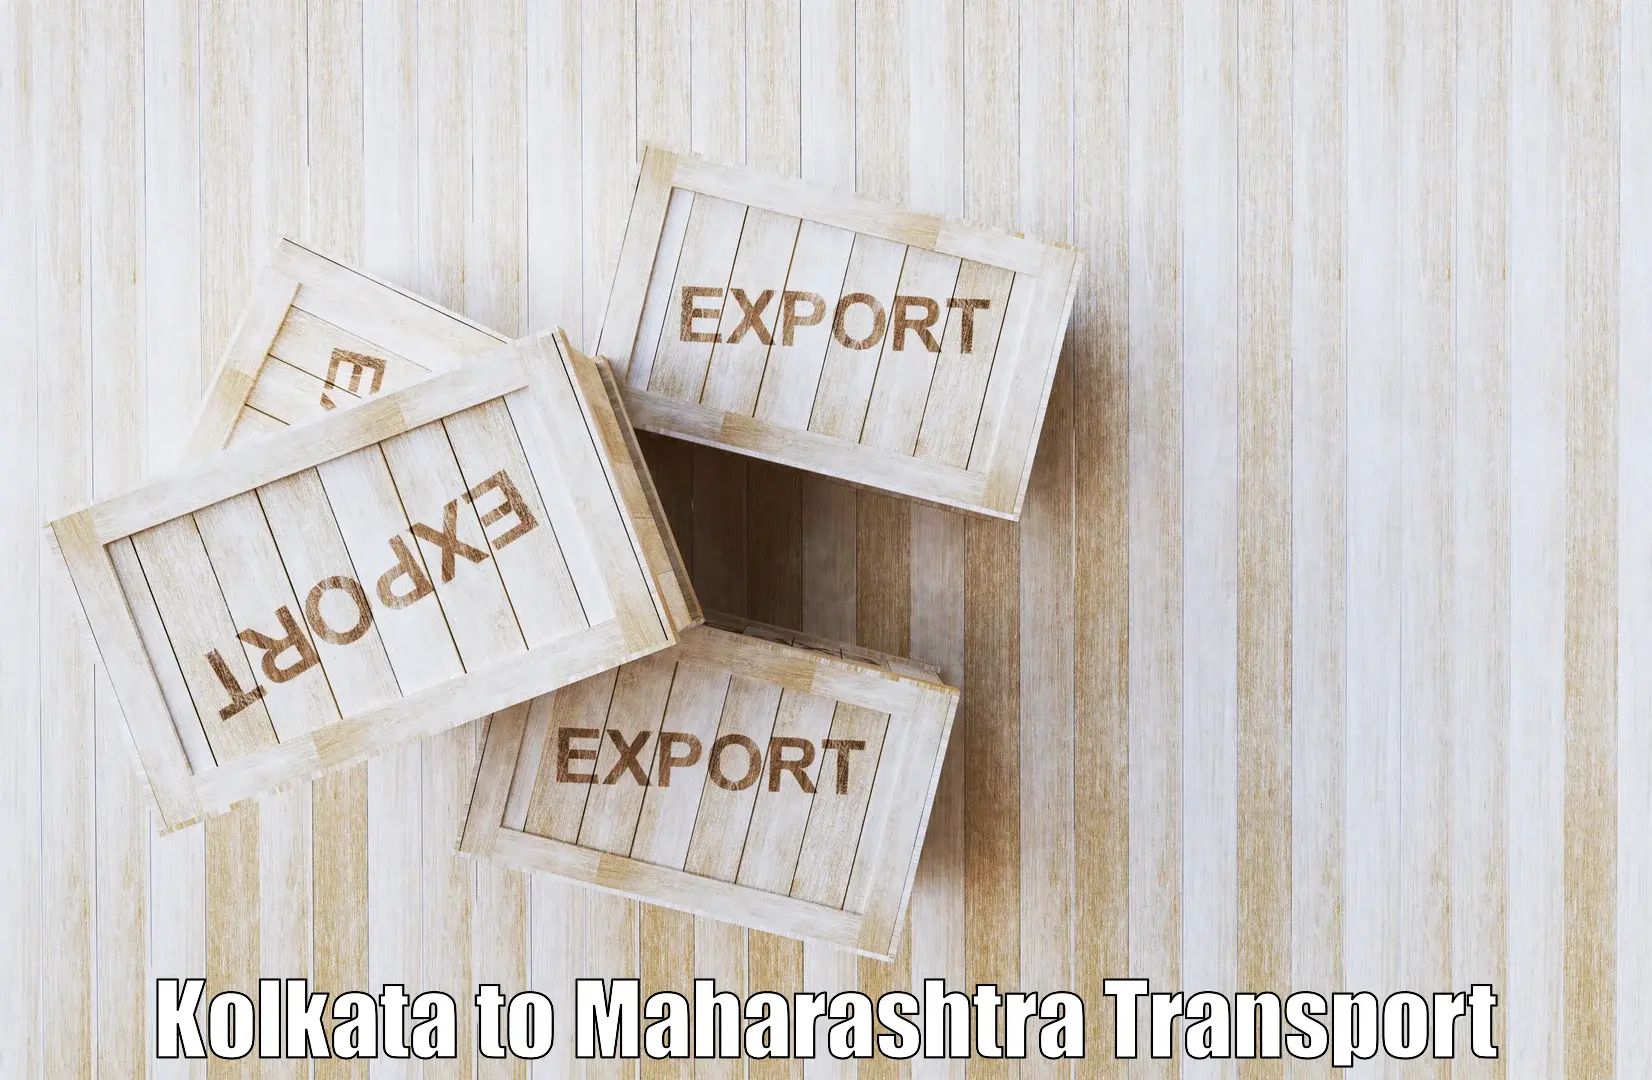 Furniture transport service Kolkata to Dhamangaon